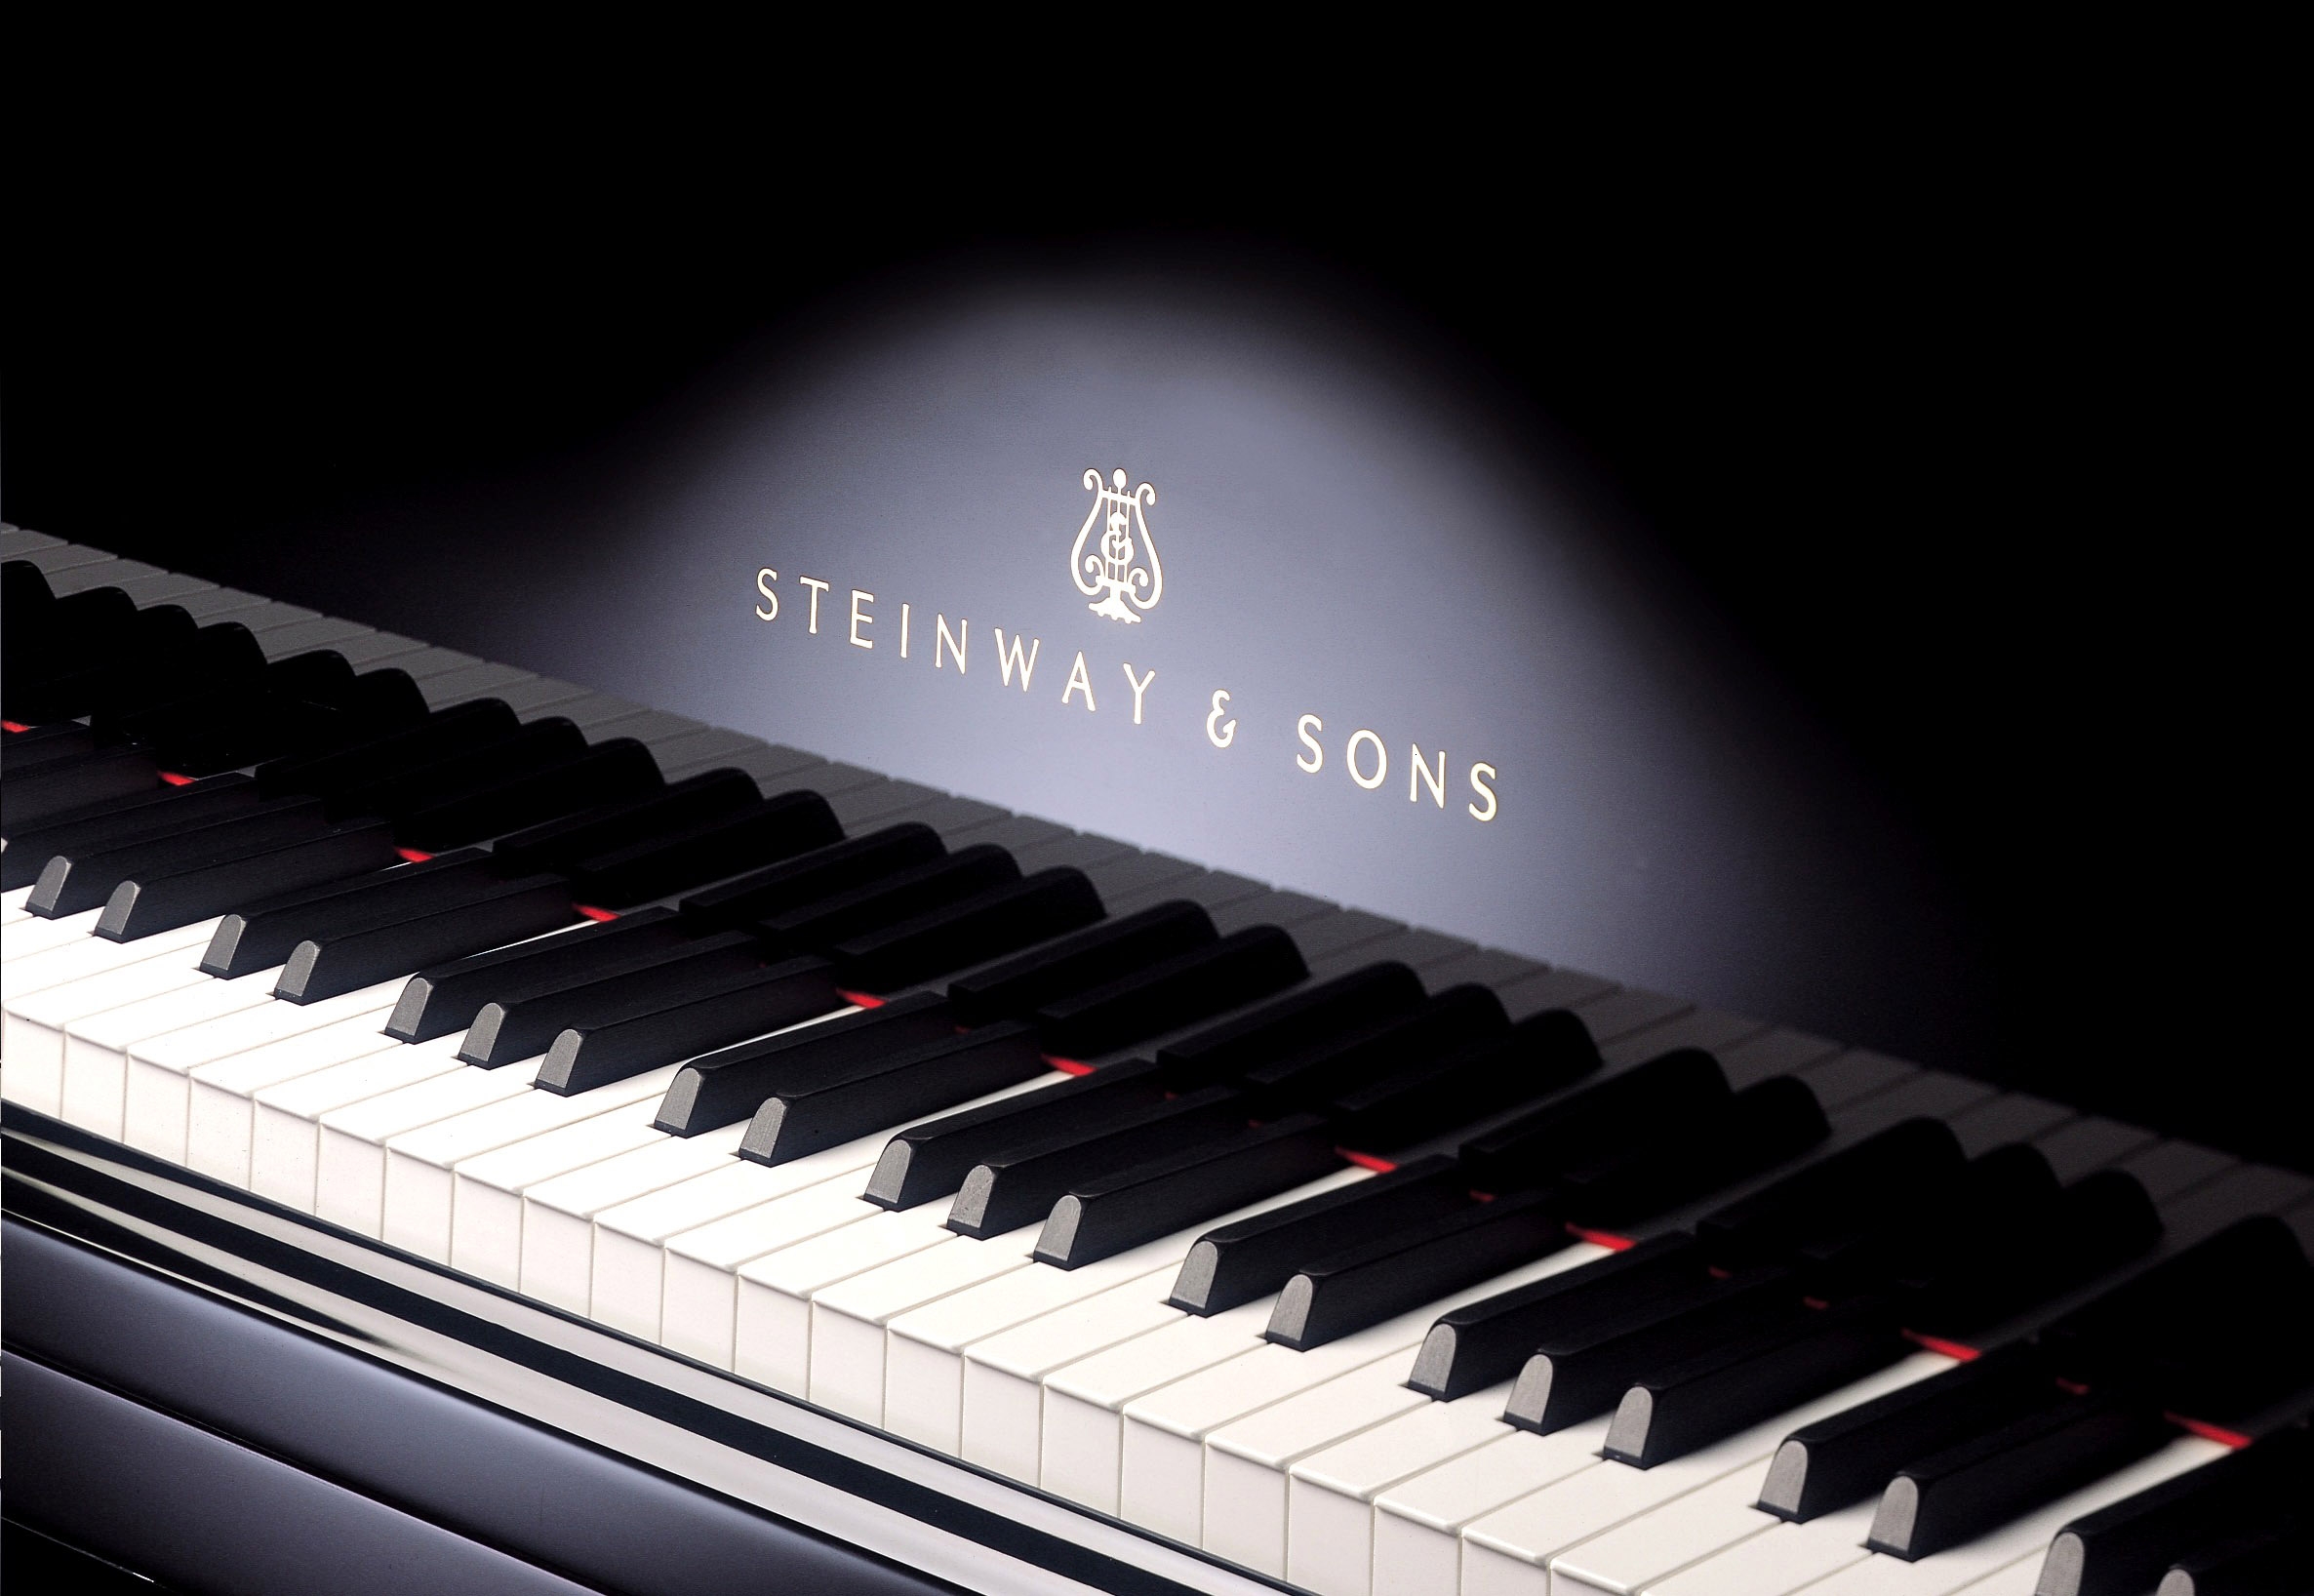 Снимаю с клавиши рояль. Пианино Steinway sons. Концертный рояль Стейнвей. Клавиатура рояля. Фортепиано.